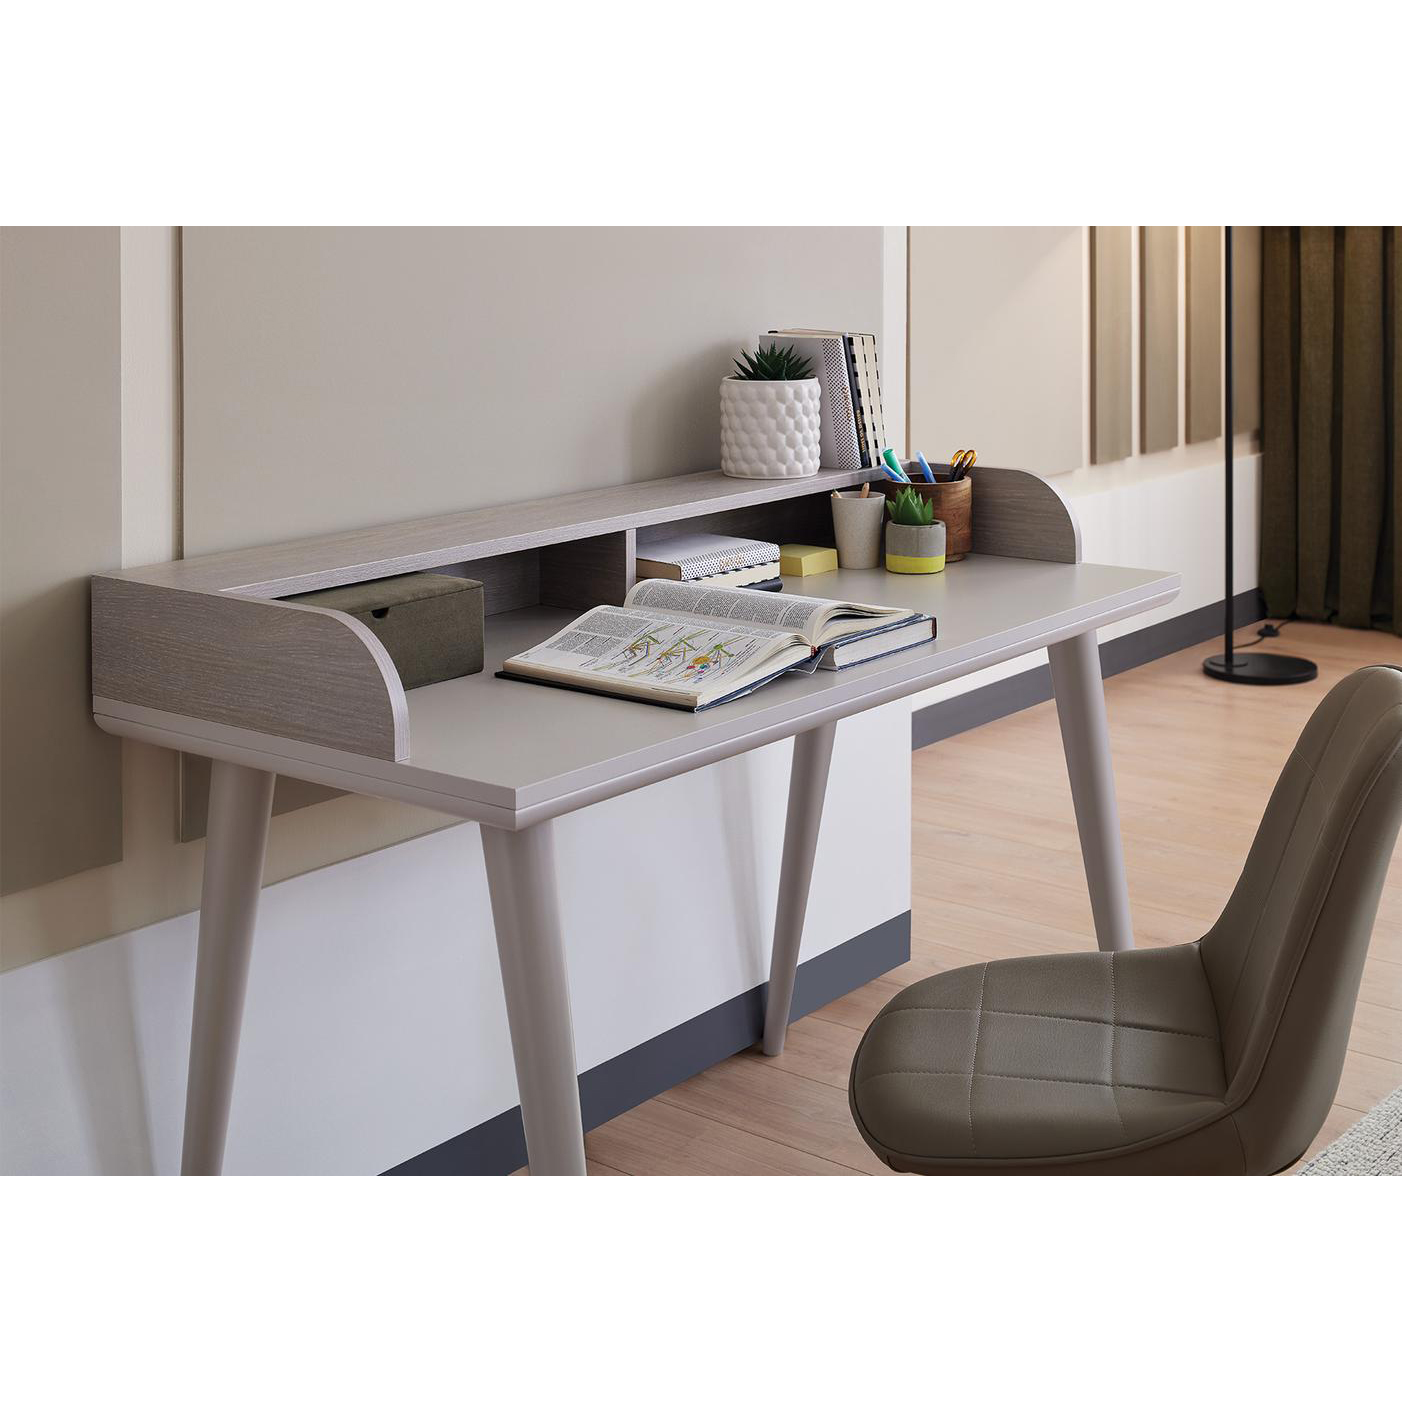 Стол письменный Enza Home Basel, размер 130х60х88 см (EH59475)EH59475